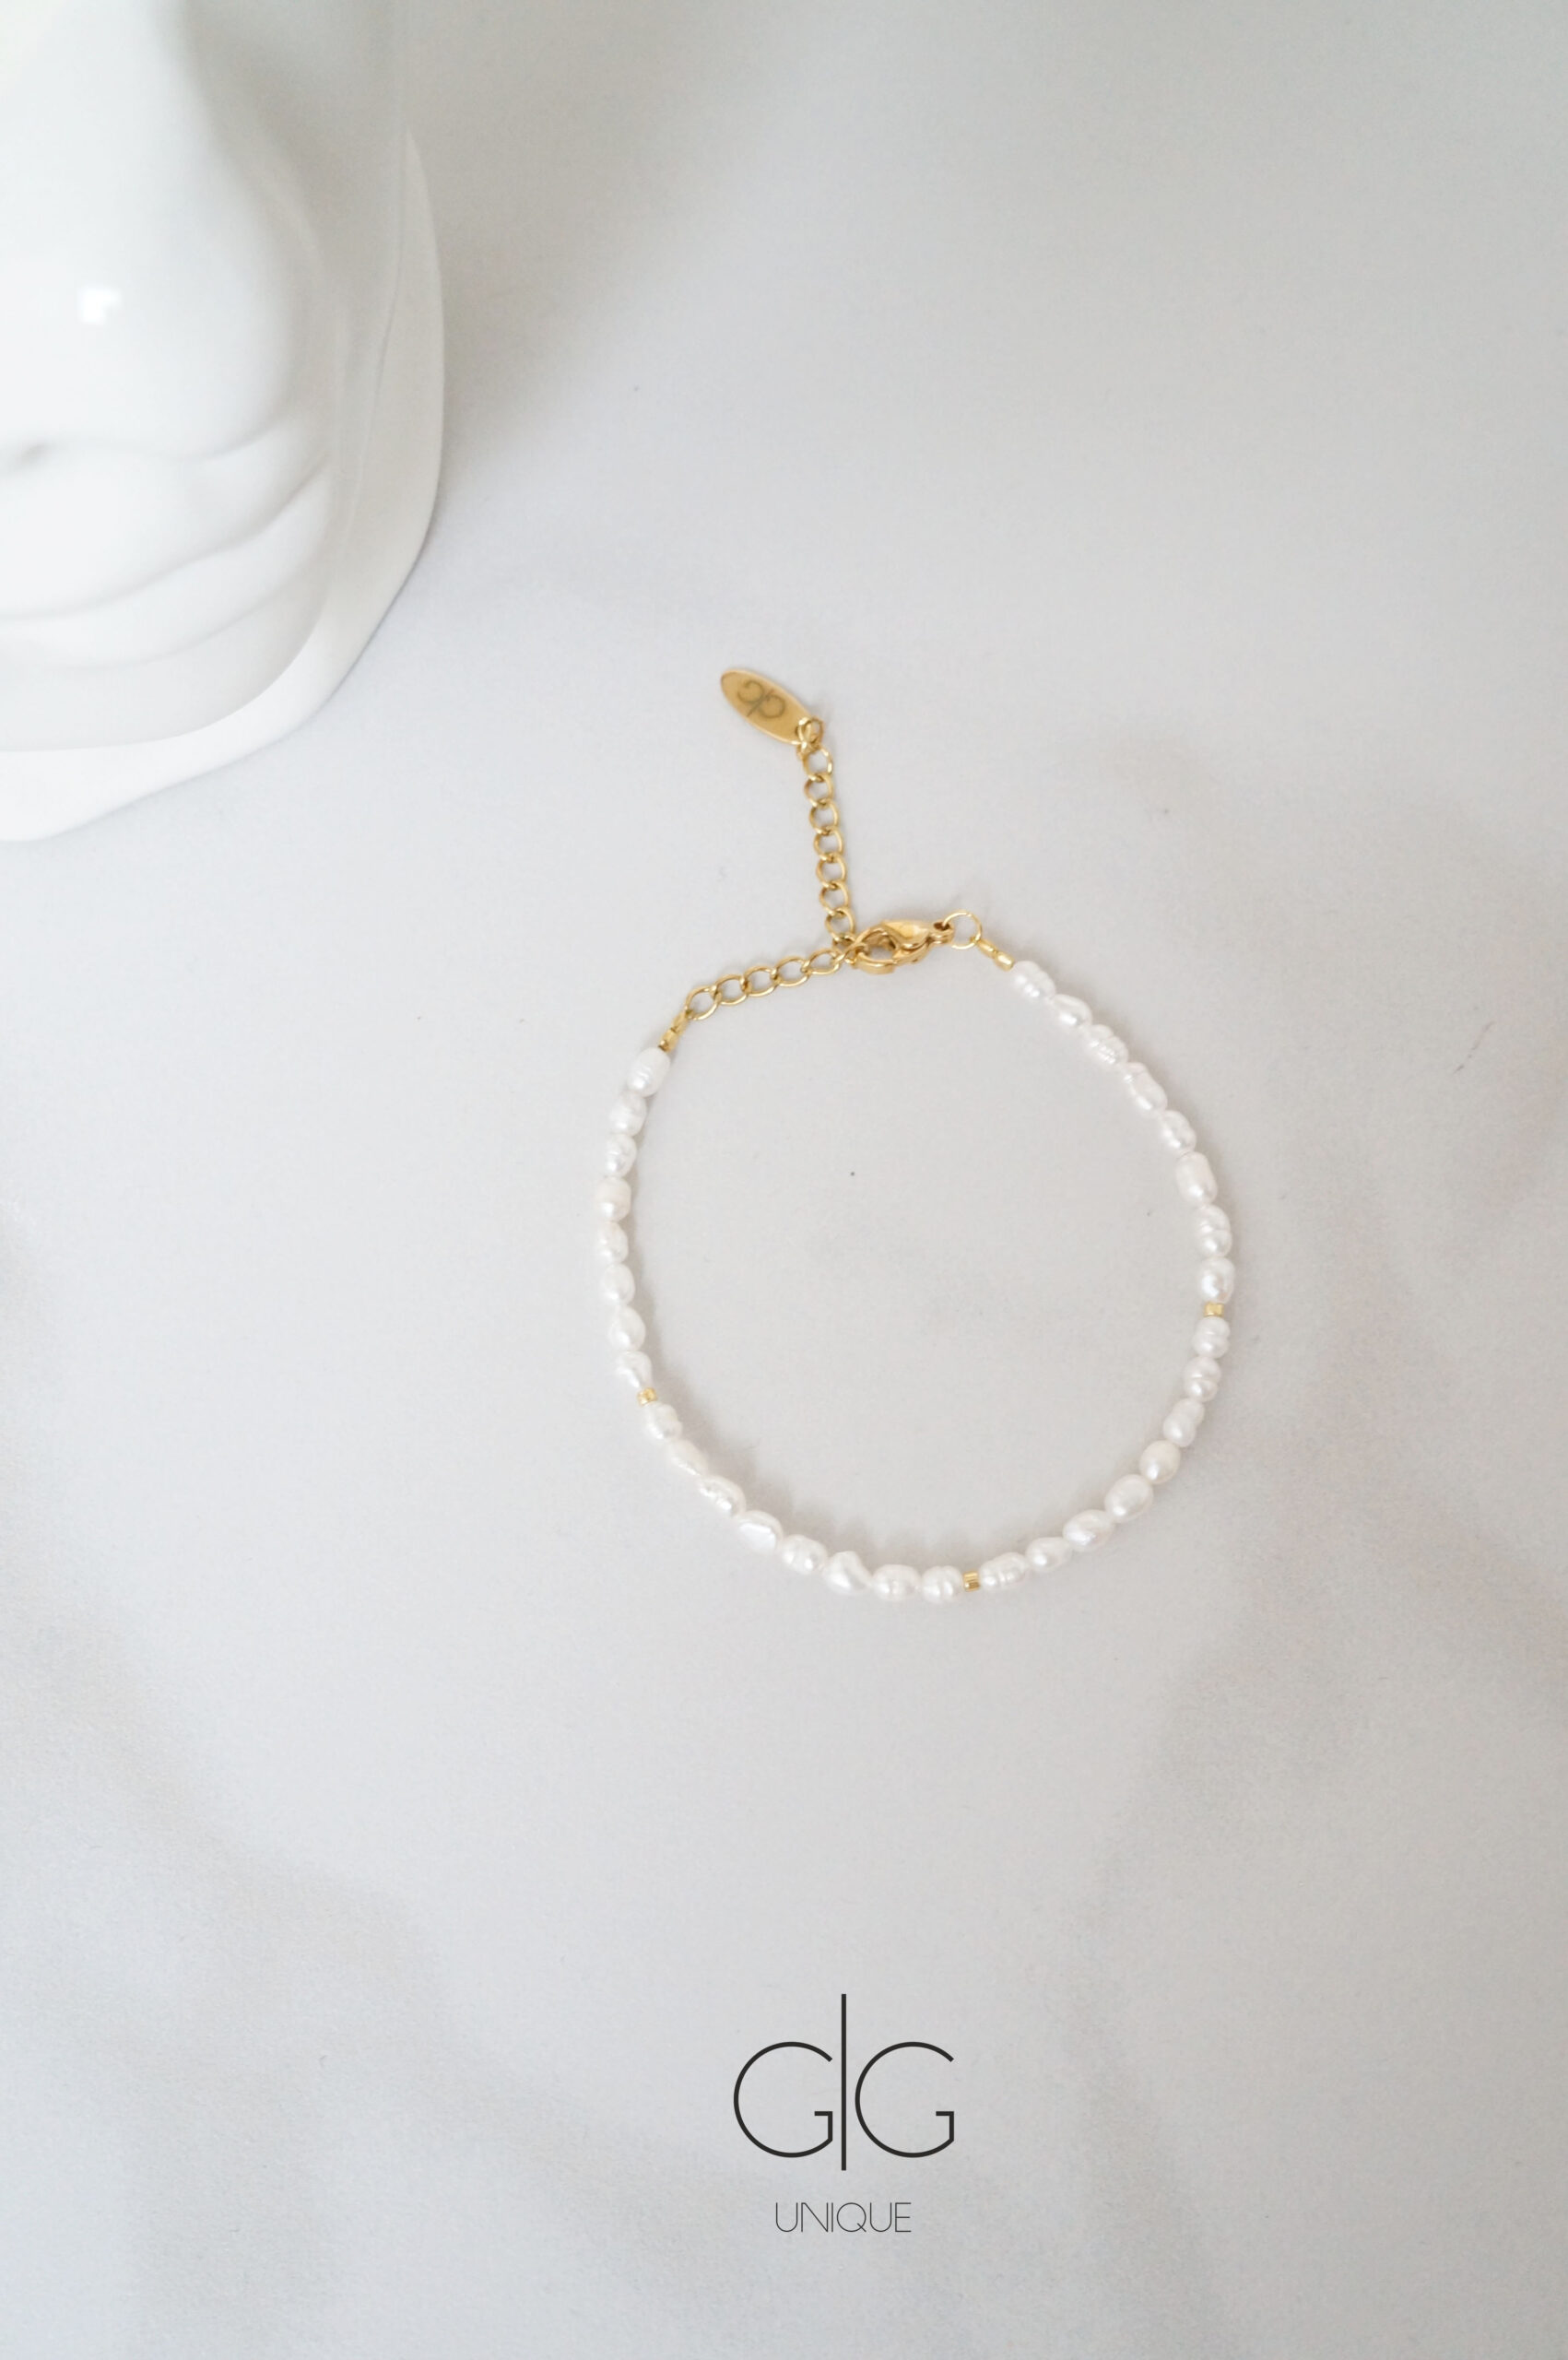 Delicate small pearl bracelet - GG UNIQUE